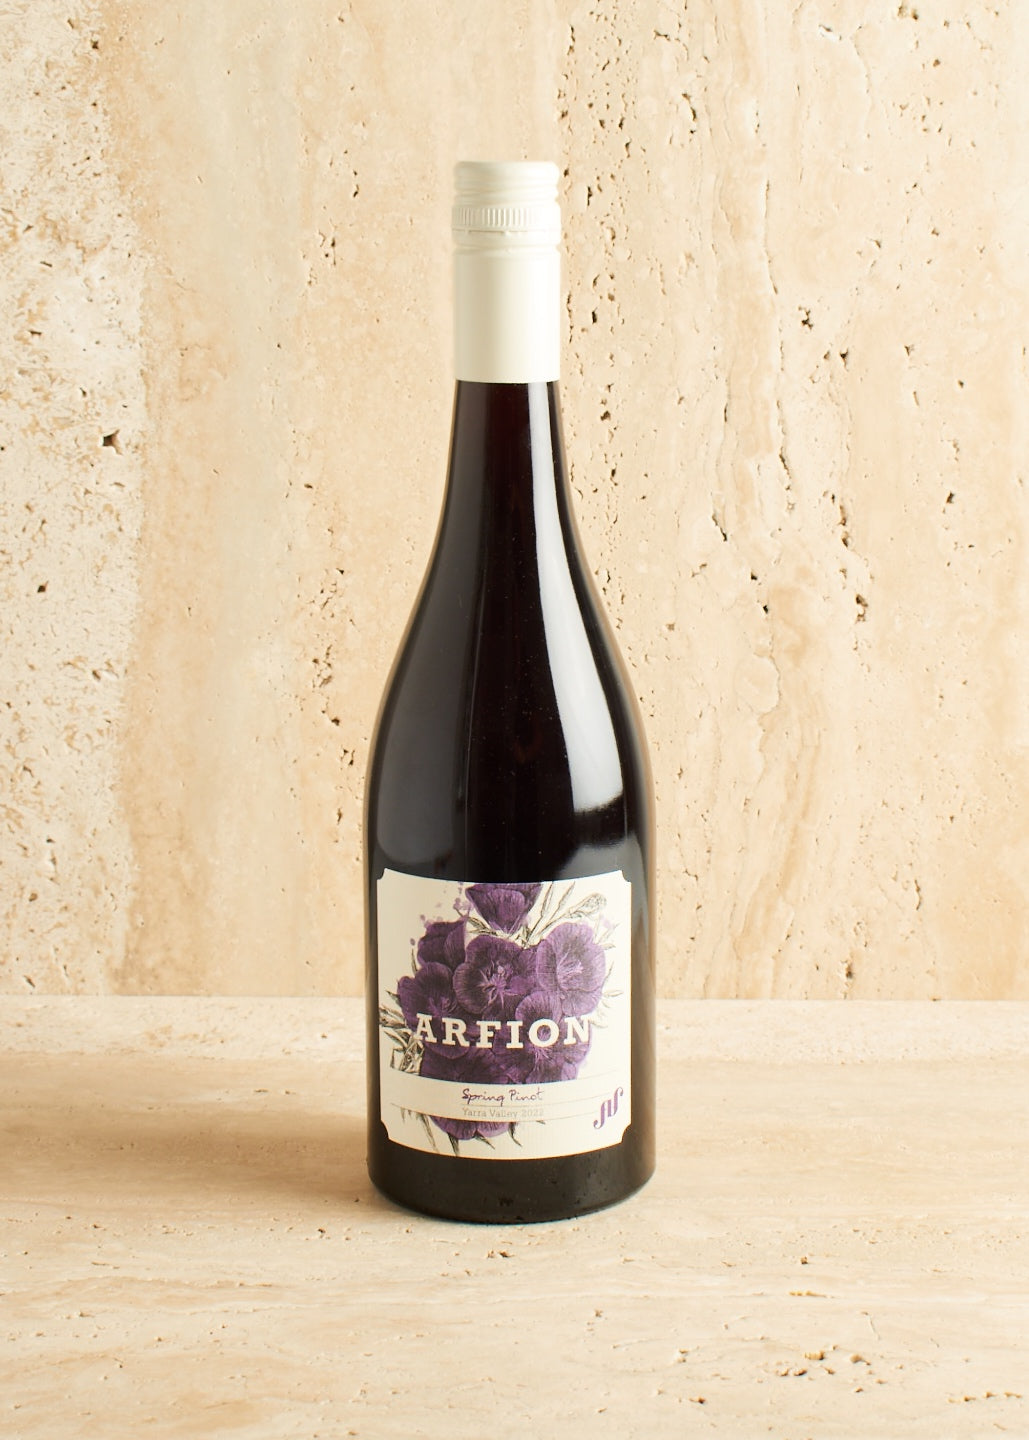 Arfion 'Spring' Pinot Noir